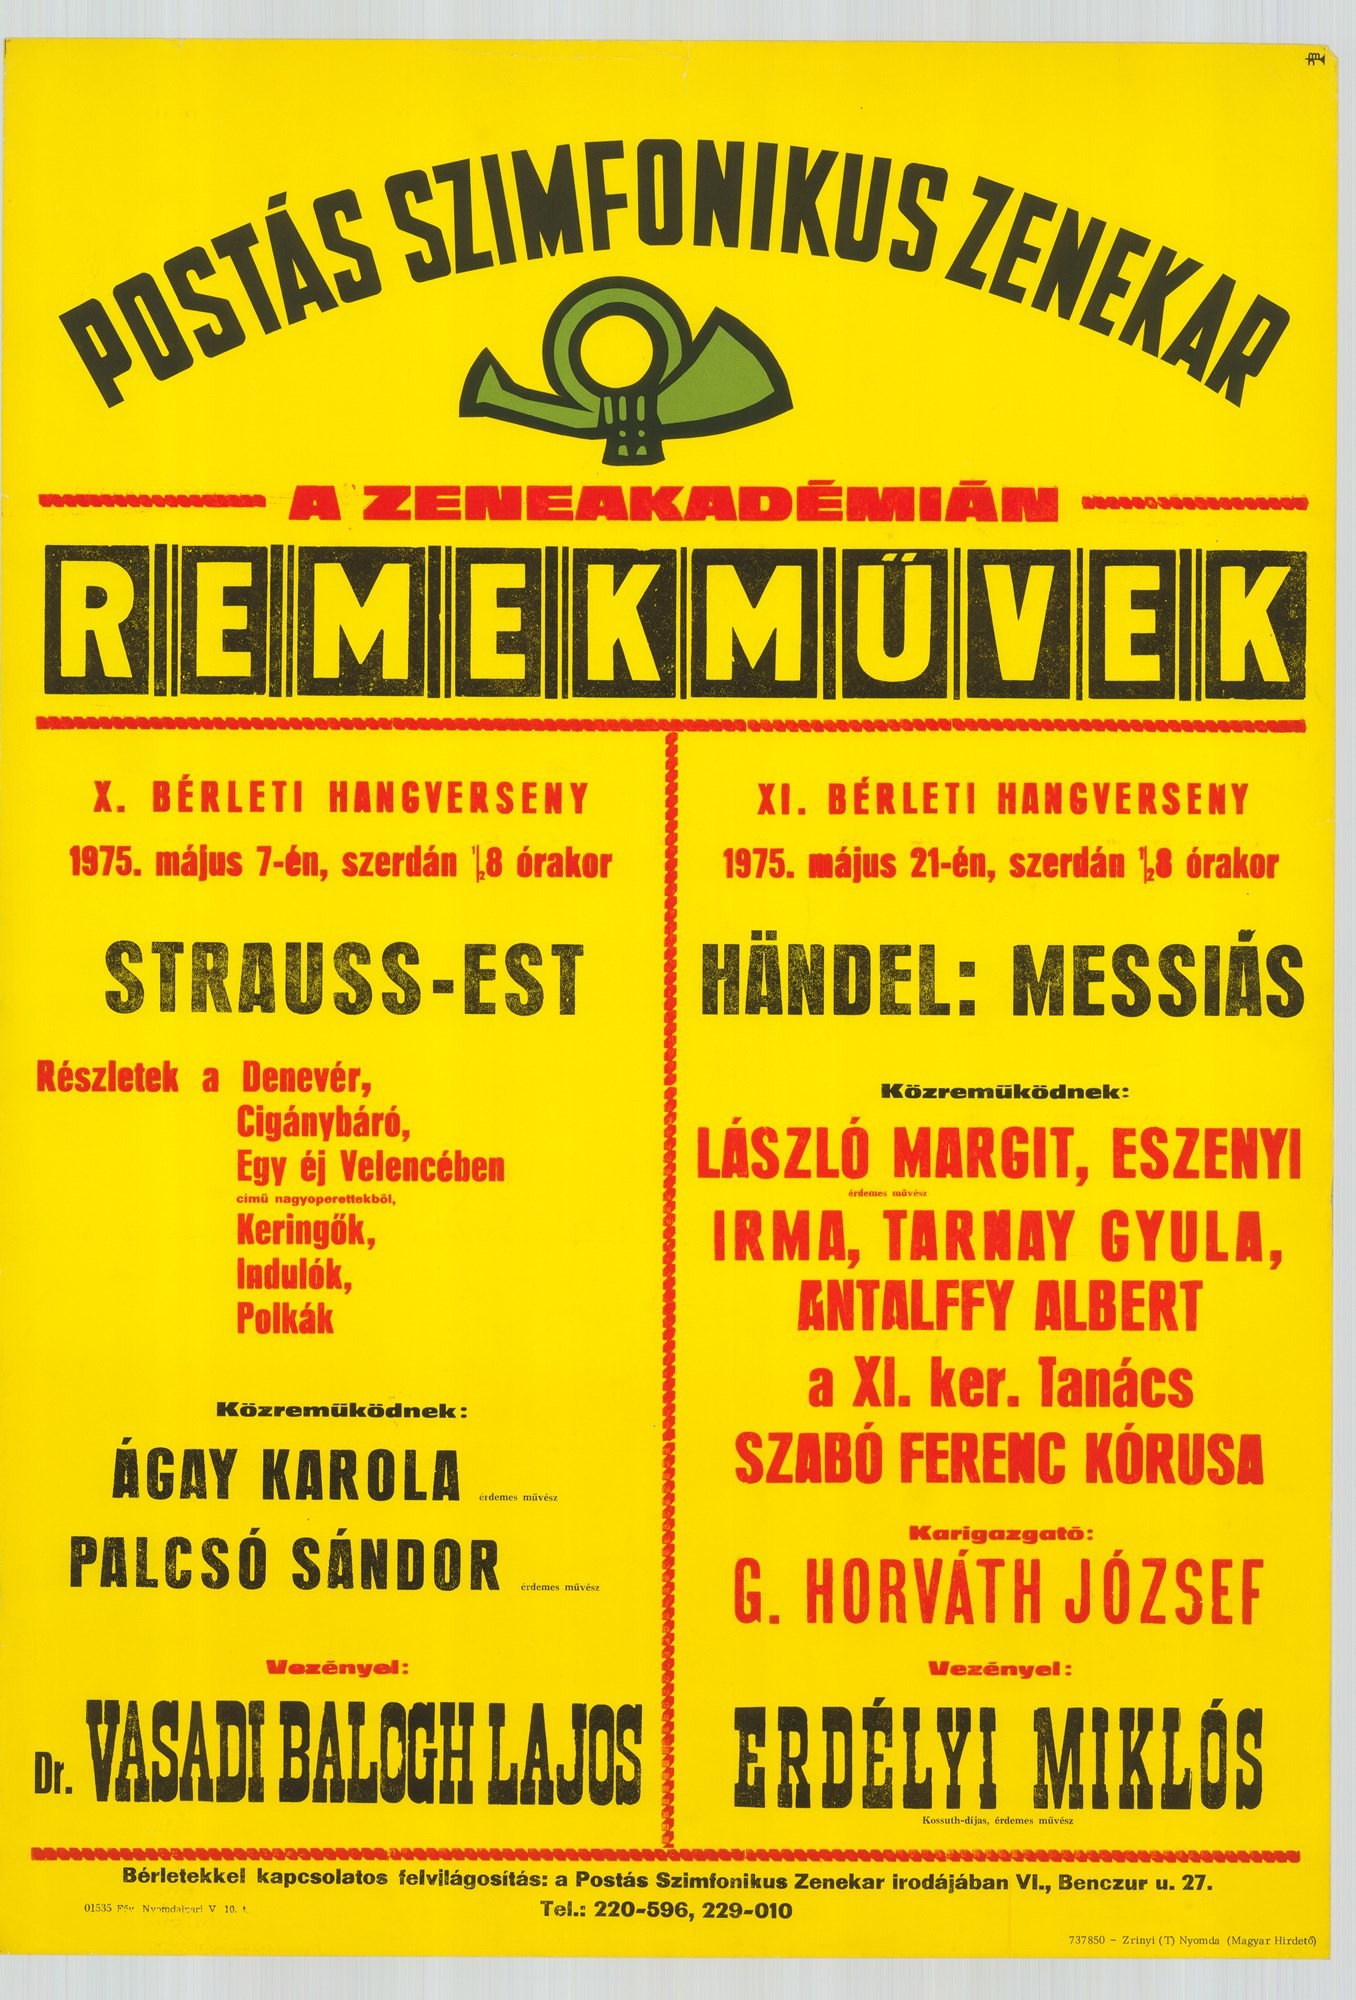 Plakát - Postás Szimfonikus Zenekar a Zeneakadémián, Remekművek, 1975 (Postamúzeum CC BY-NC-SA)